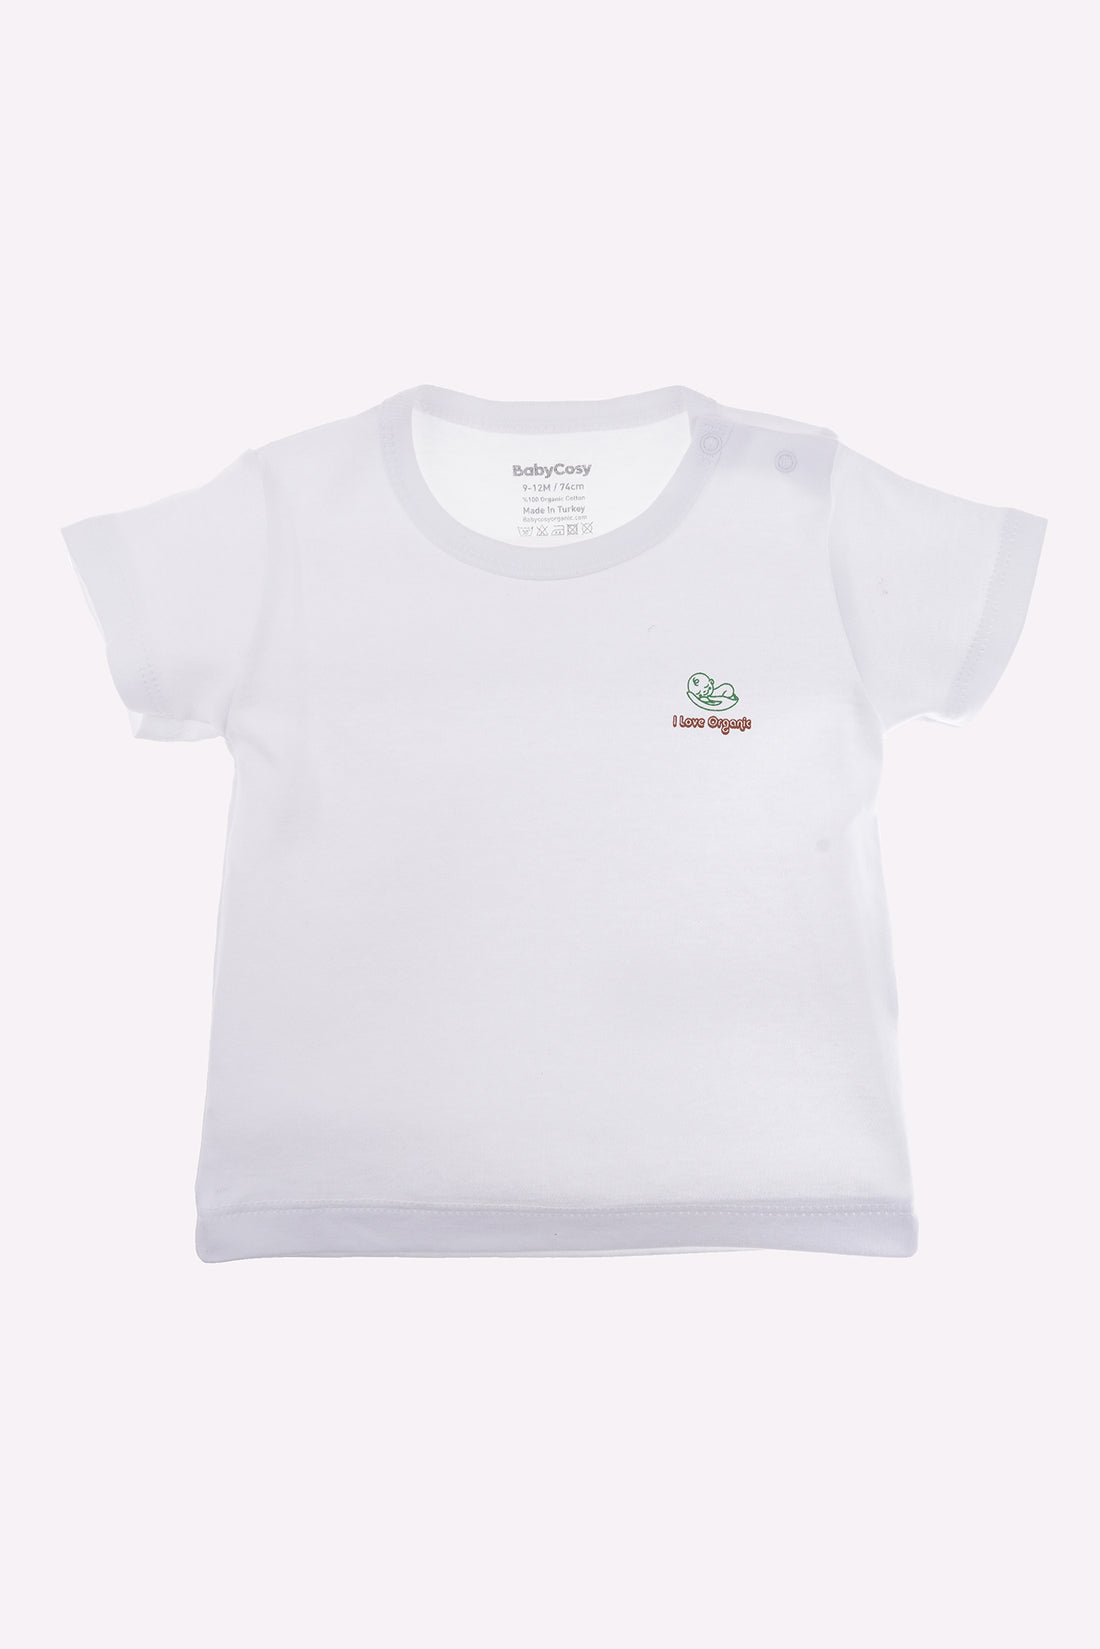 Babycosy Organic Basic T-shirt Set of 2 (White)